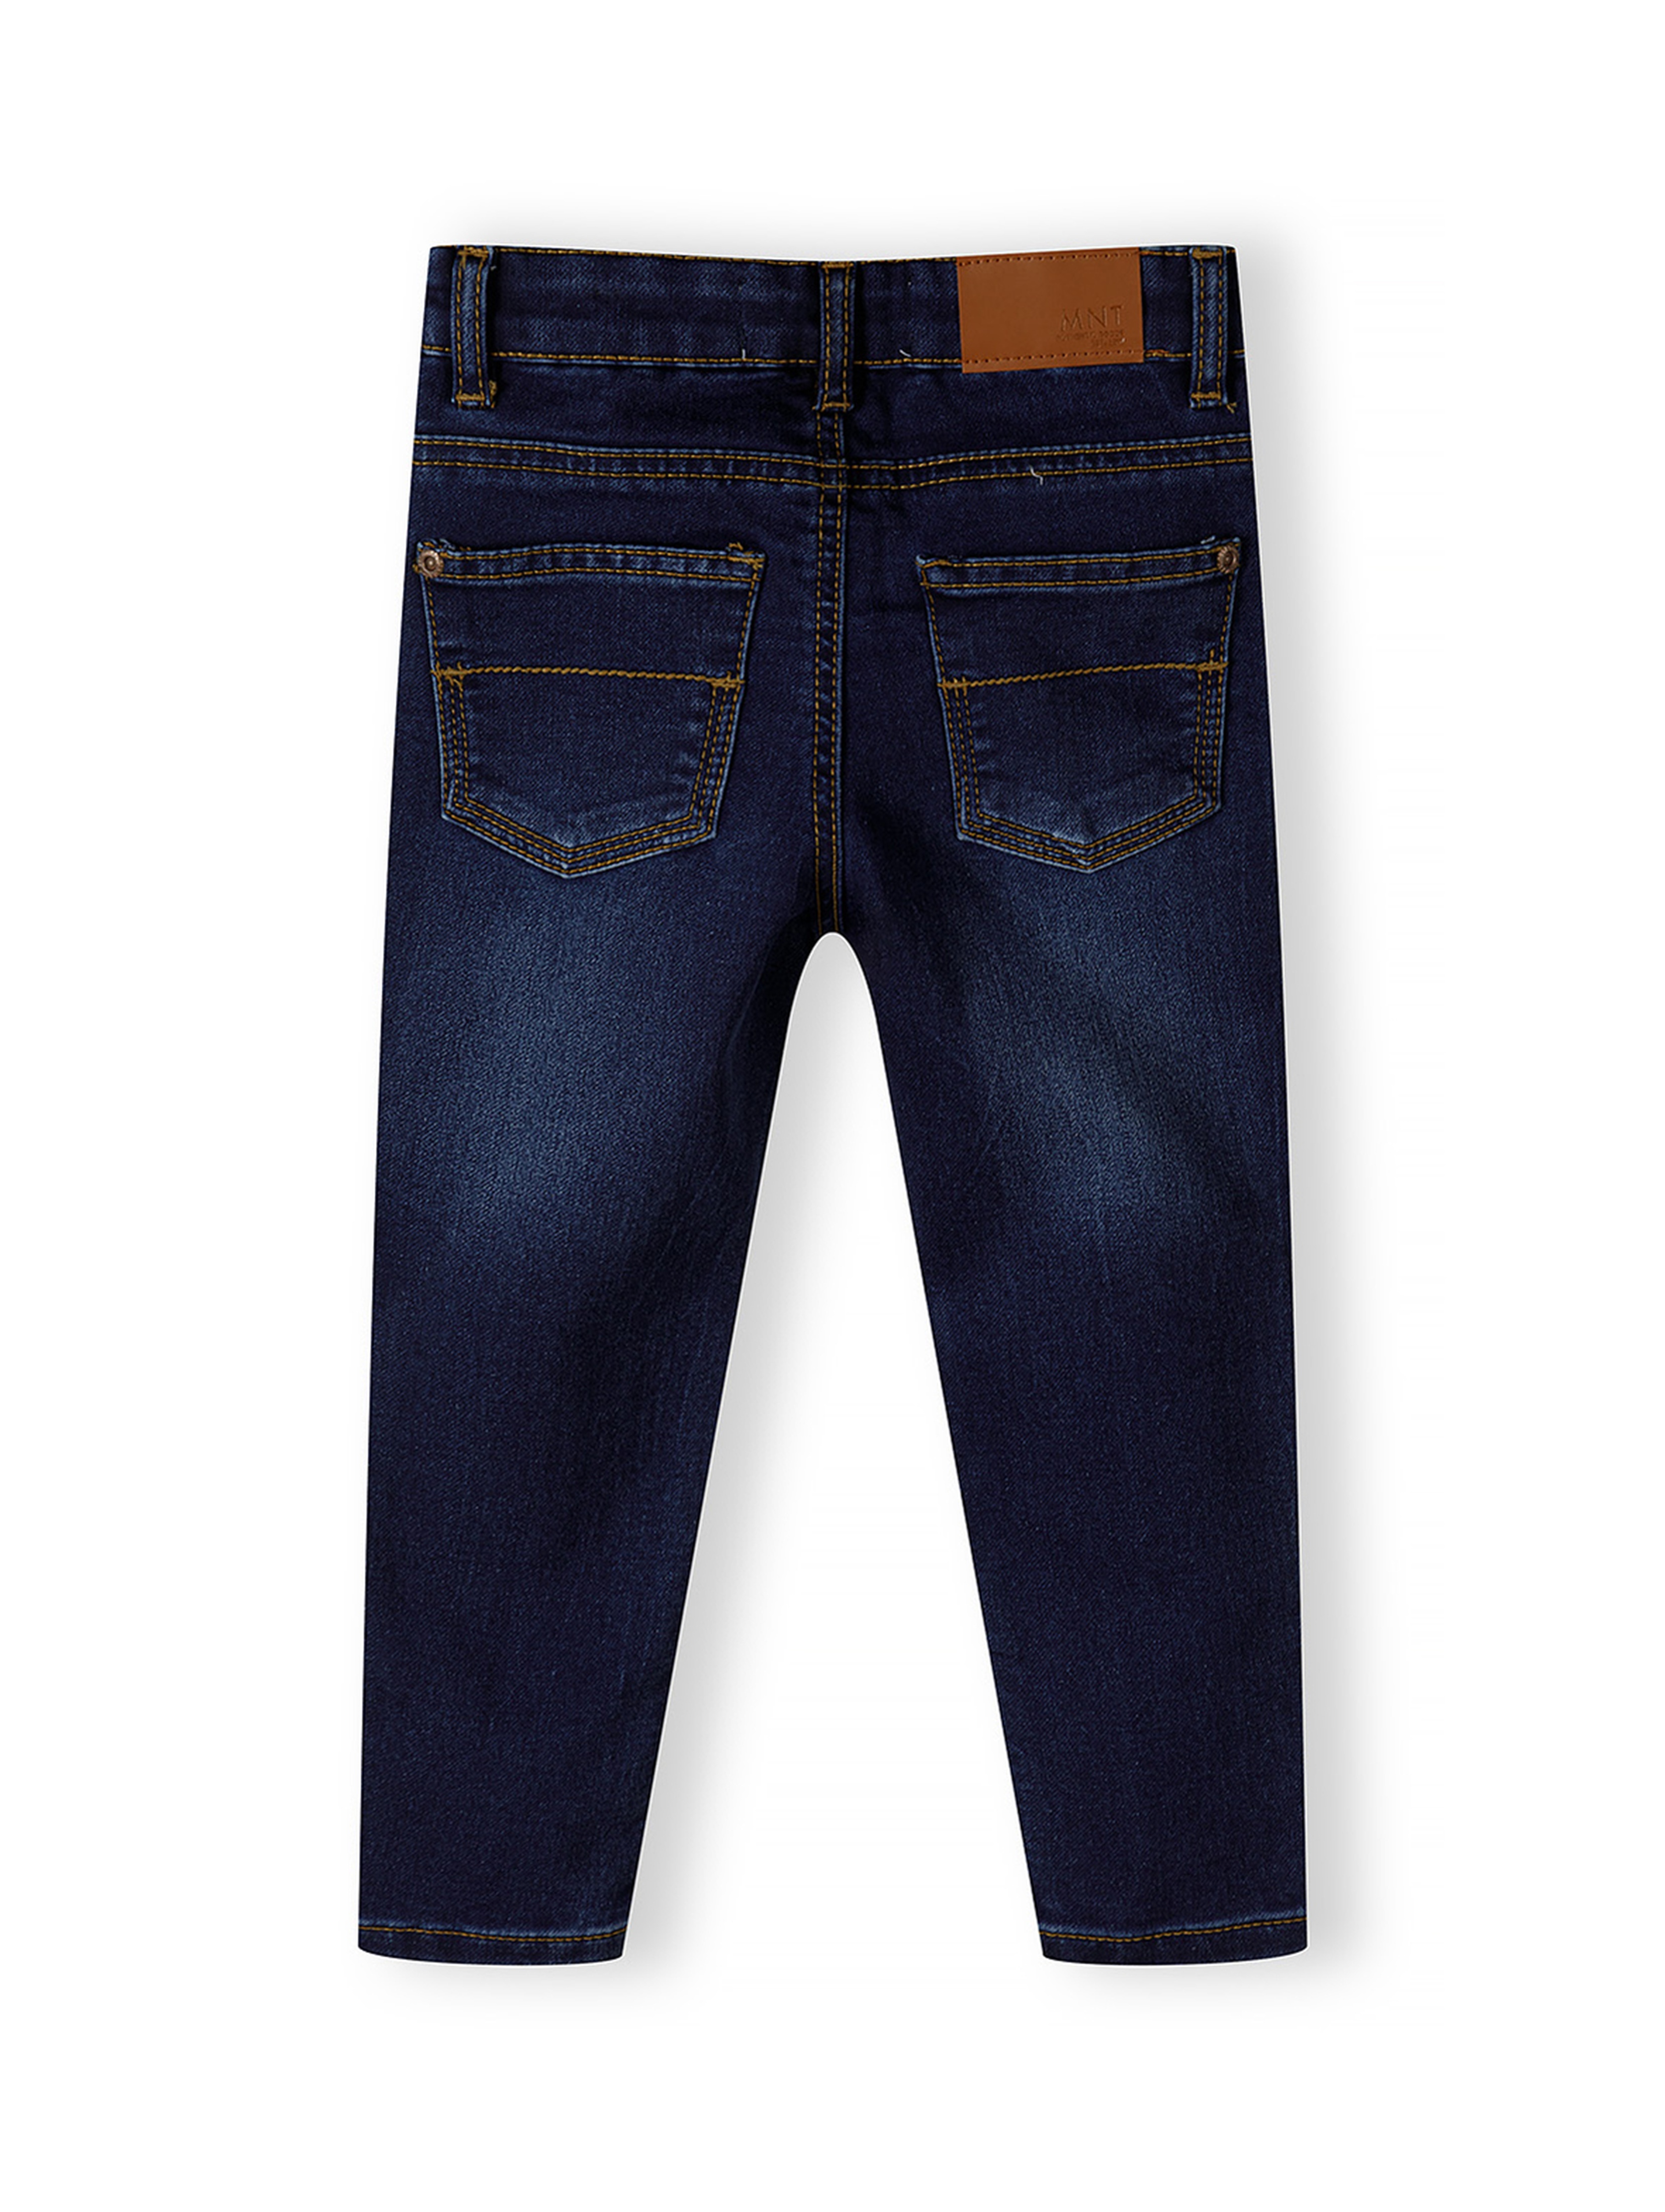 Ciemne klasyczne spodnie jeansowe dopasowane dla niemowlaka